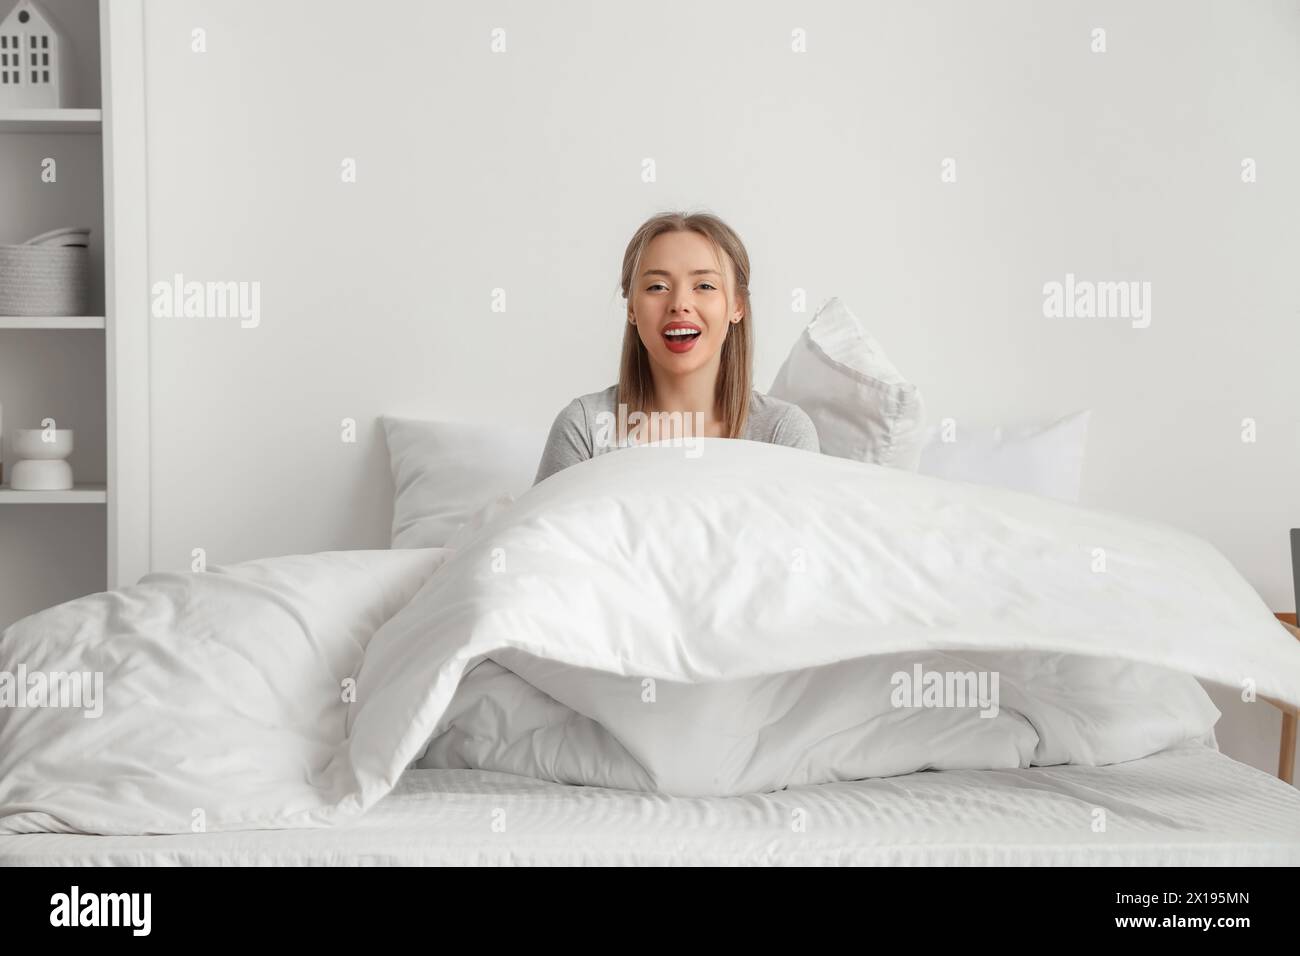 Glückliche junge Frau, die auf einem bequemen Bett im Schlafzimmer sitzt Stockfoto